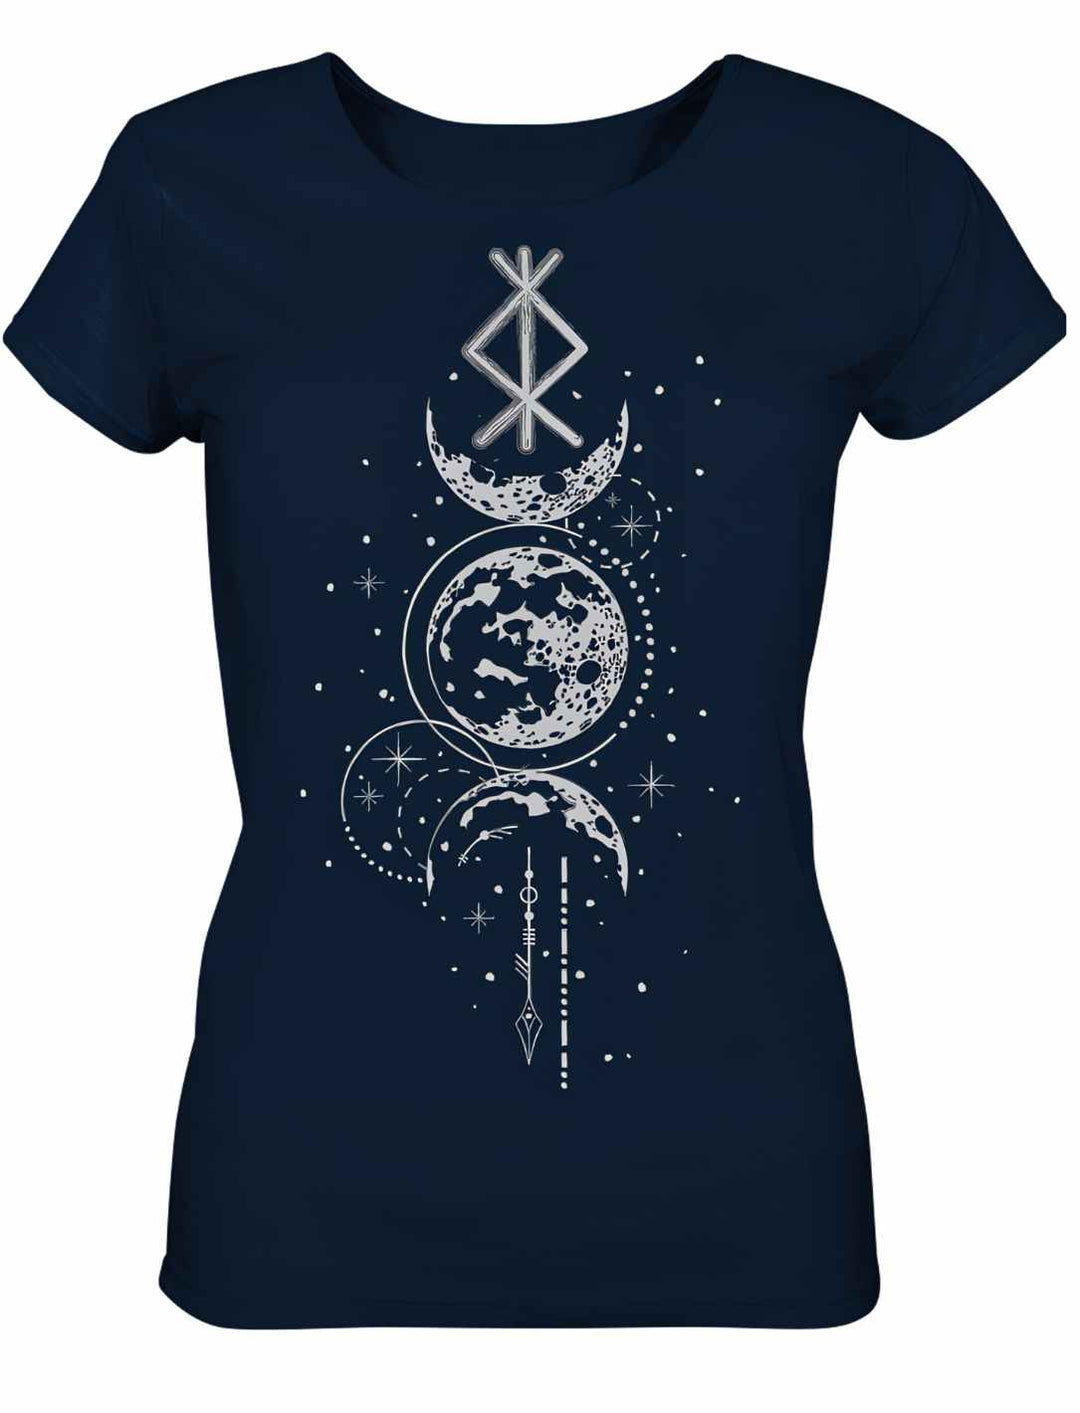 Damen T-Shirt - Rune des Mondschein Wächters, nordisches Design in der Farbe french navy. Von Runental.de